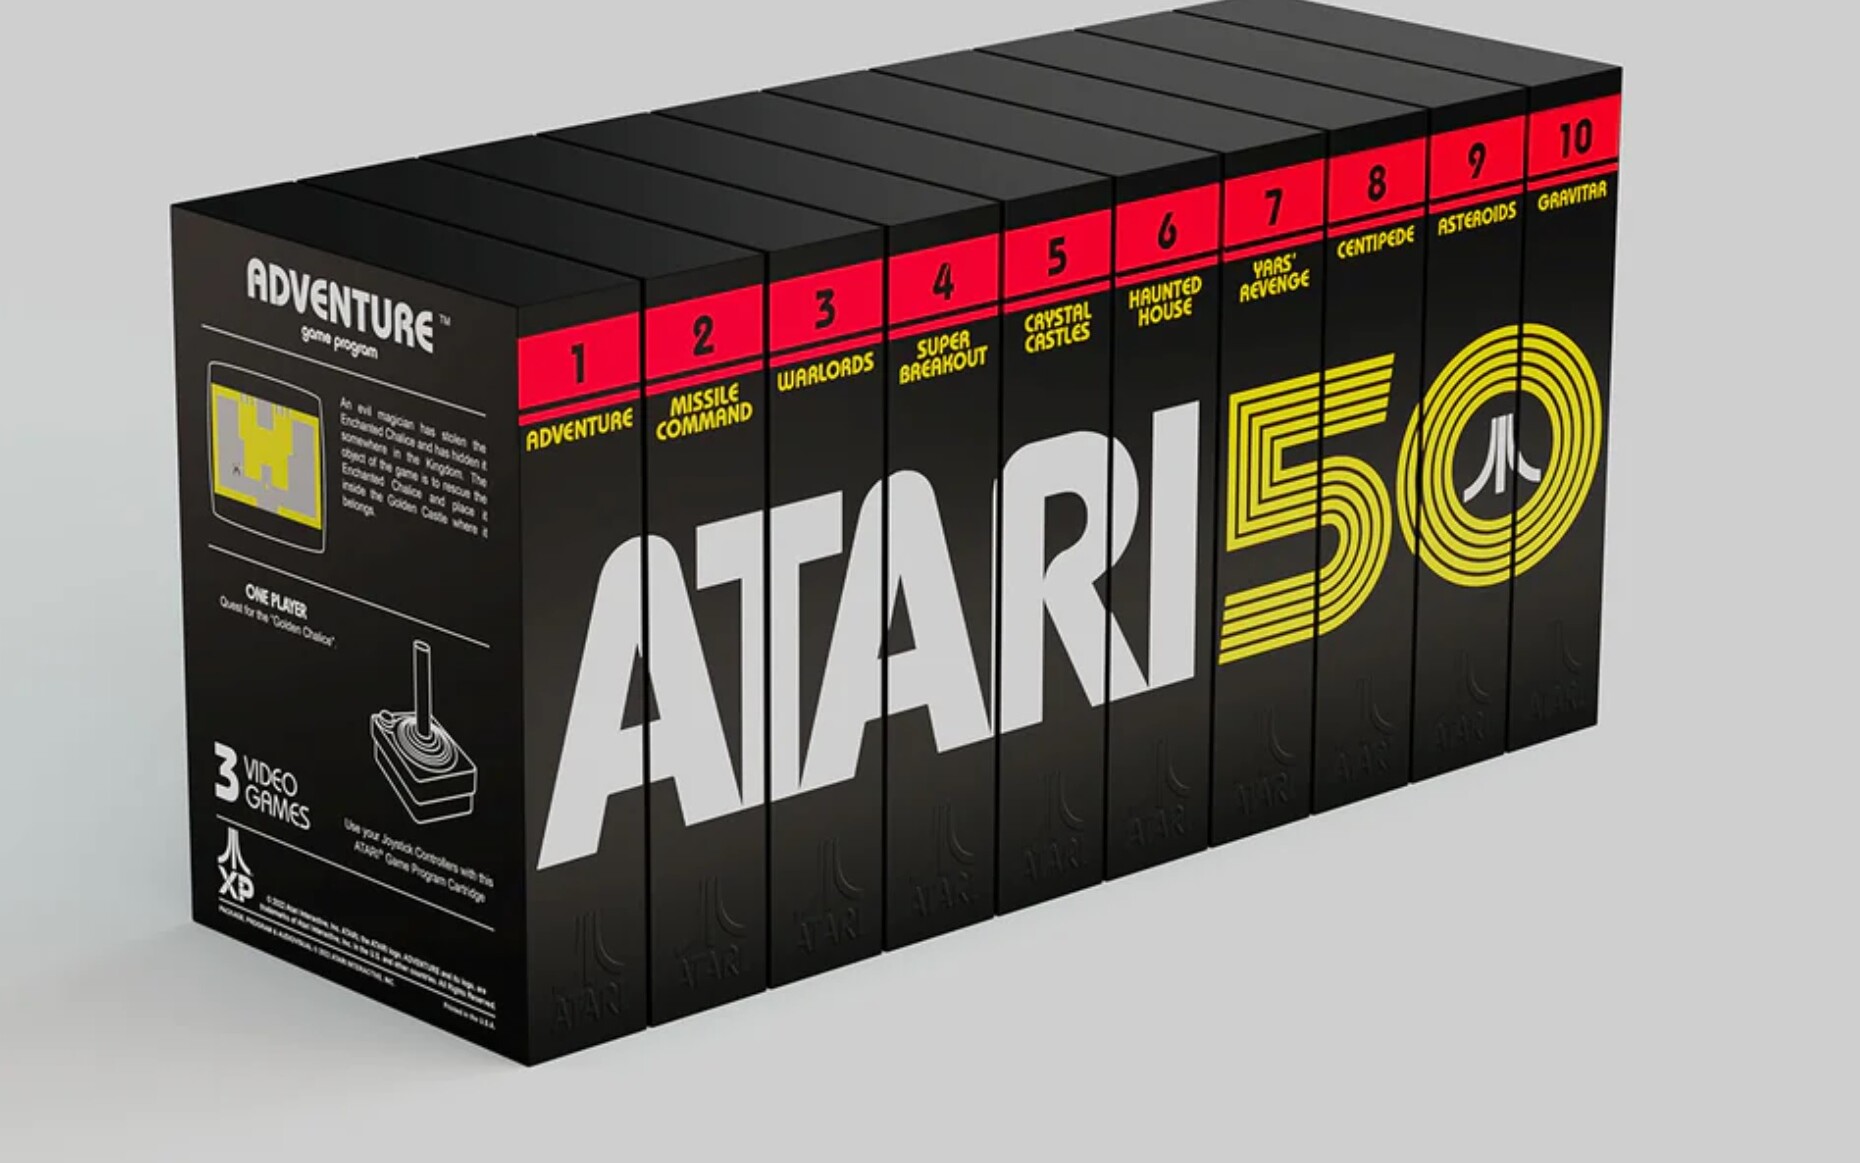 Atari kolekcja